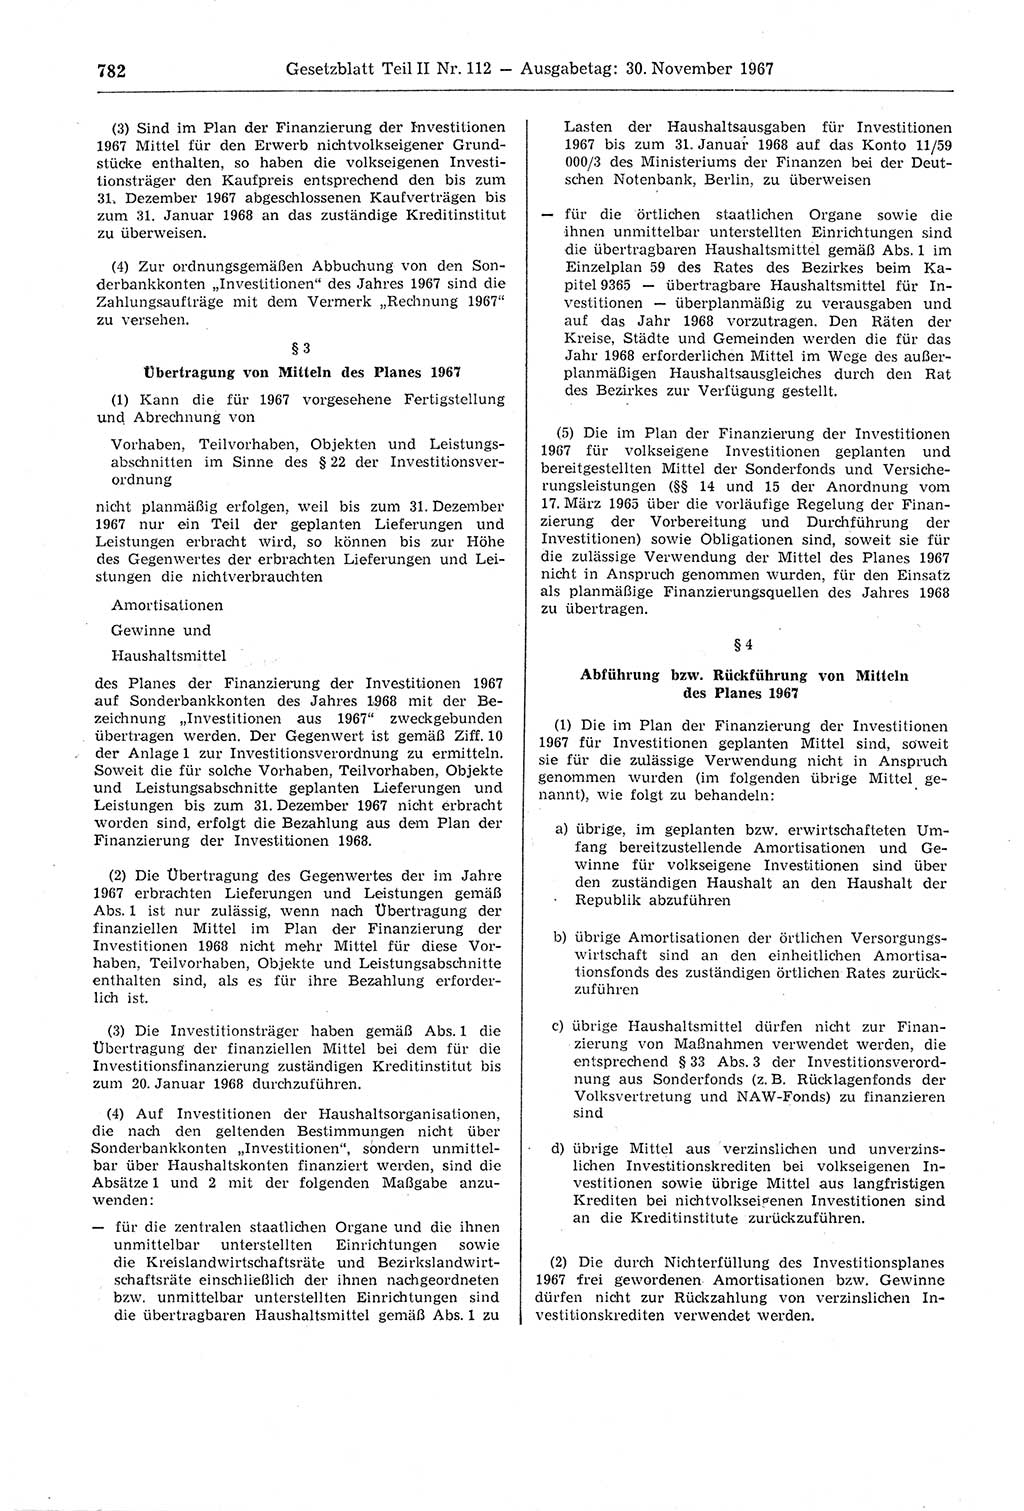 Gesetzblatt (GBl.) der Deutschen Demokratischen Republik (DDR) Teil ⅠⅠ 1967, Seite 782 (GBl. DDR ⅠⅠ 1967, S. 782)